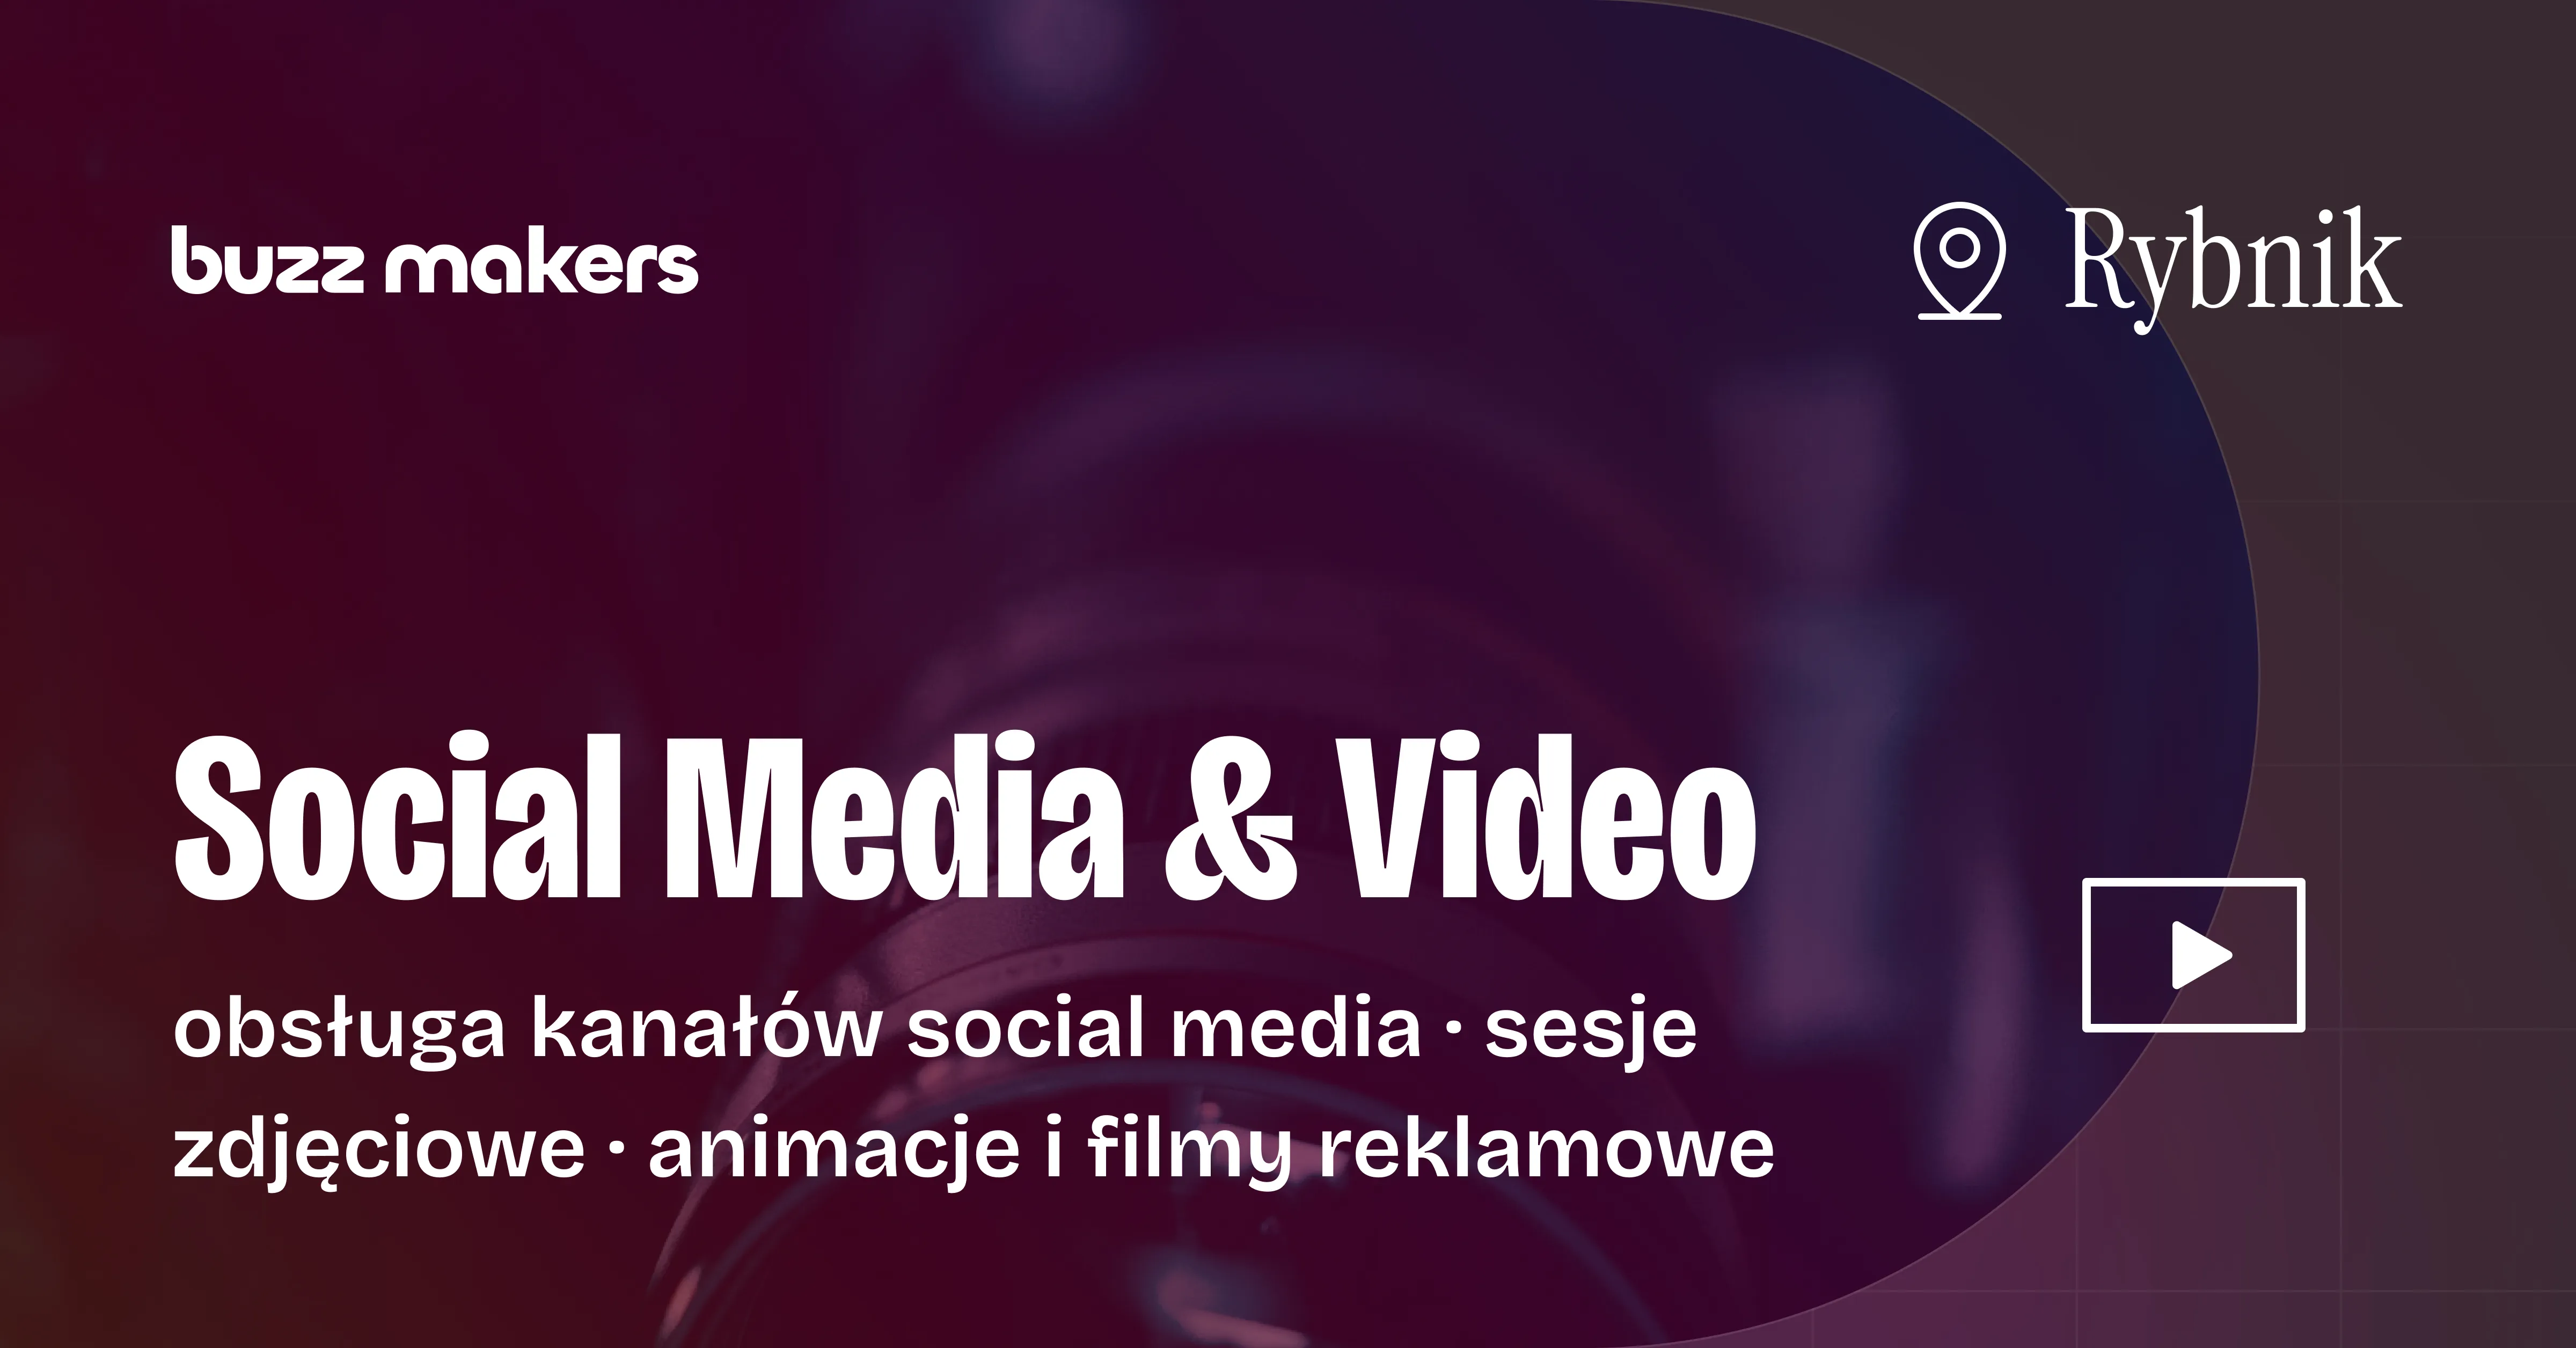 Zarządzanie social media dla firm w Rybniku